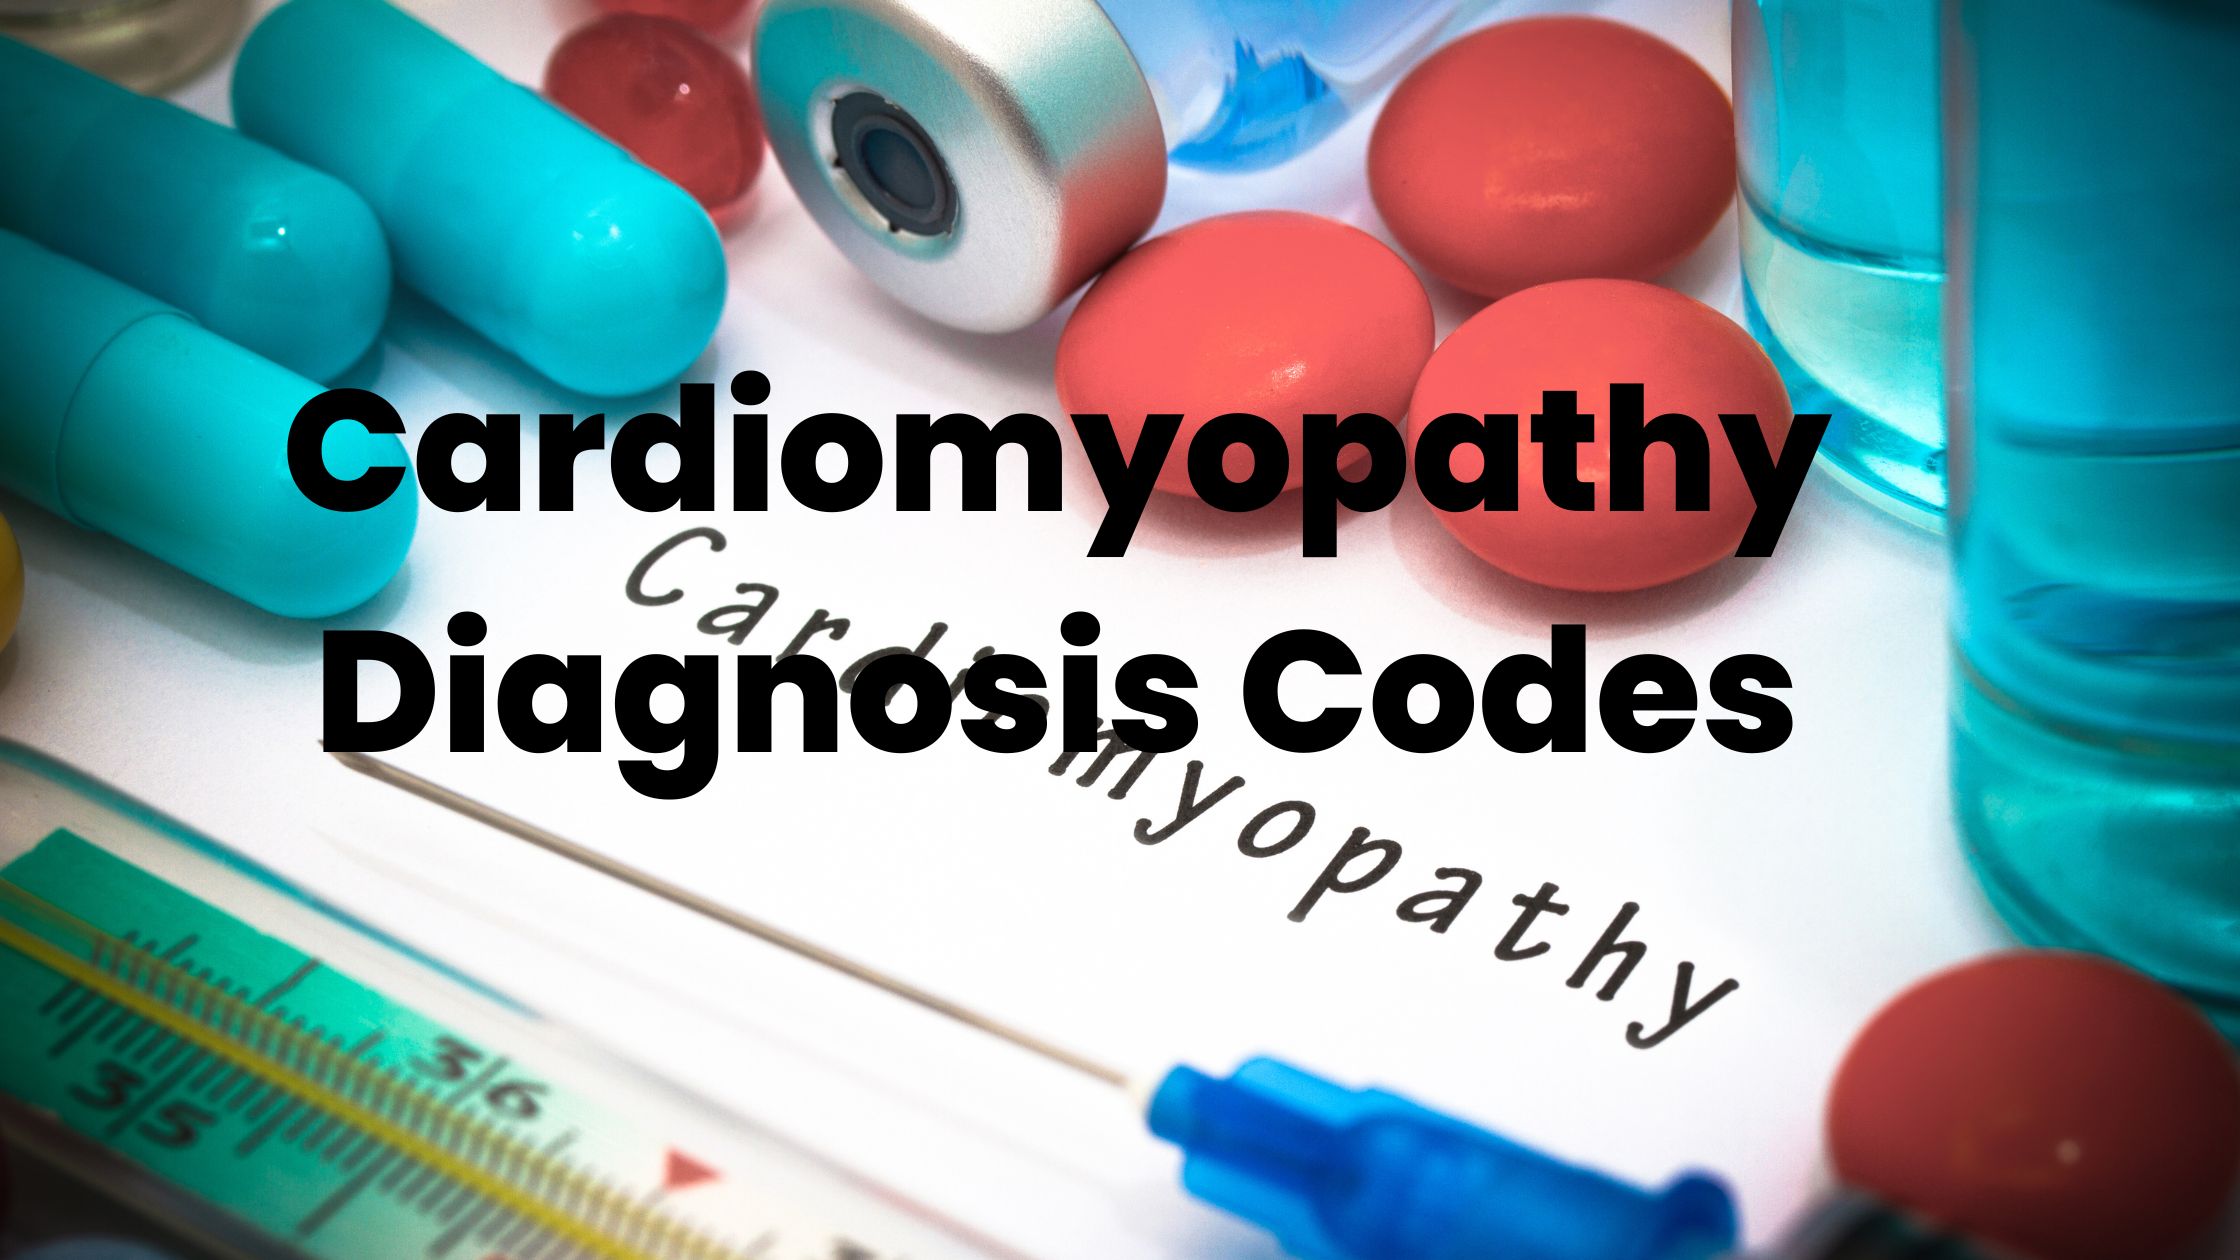 Cardiomyopathy icd10-cm codes